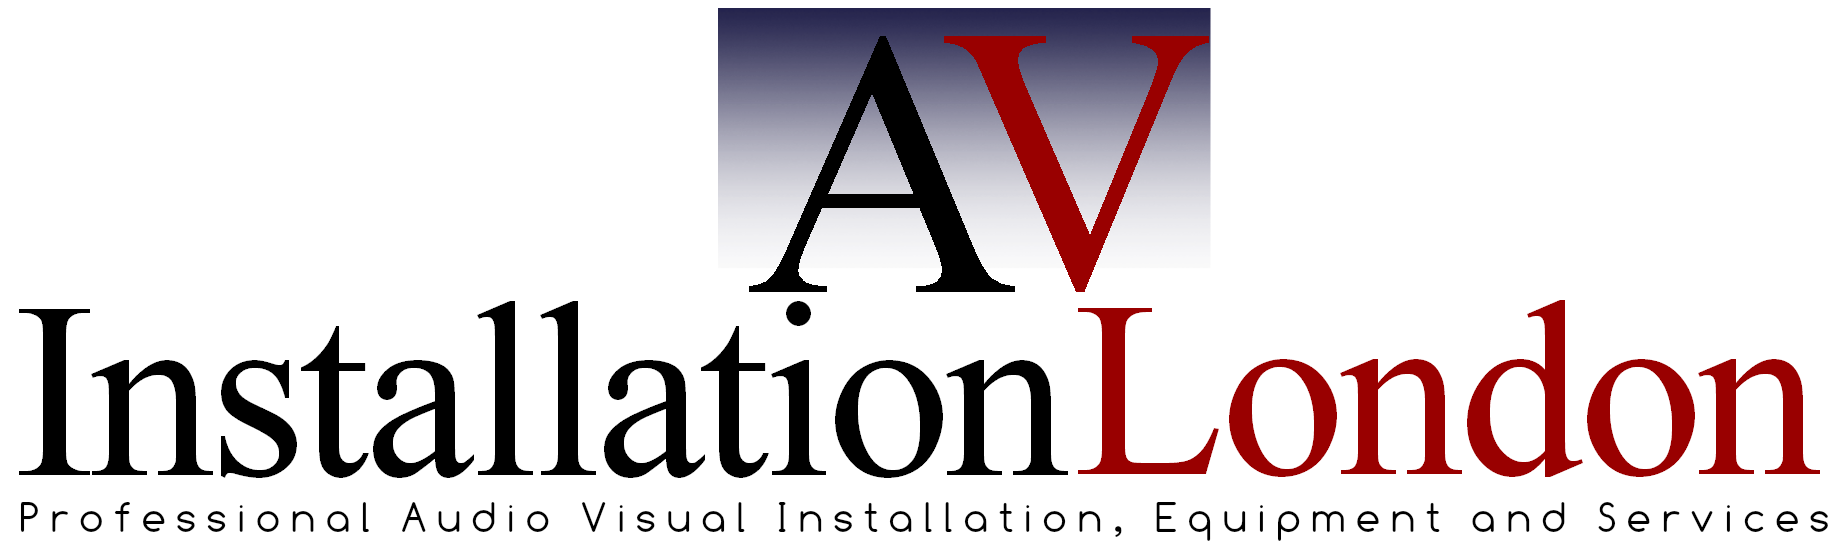 AV Installation London logo